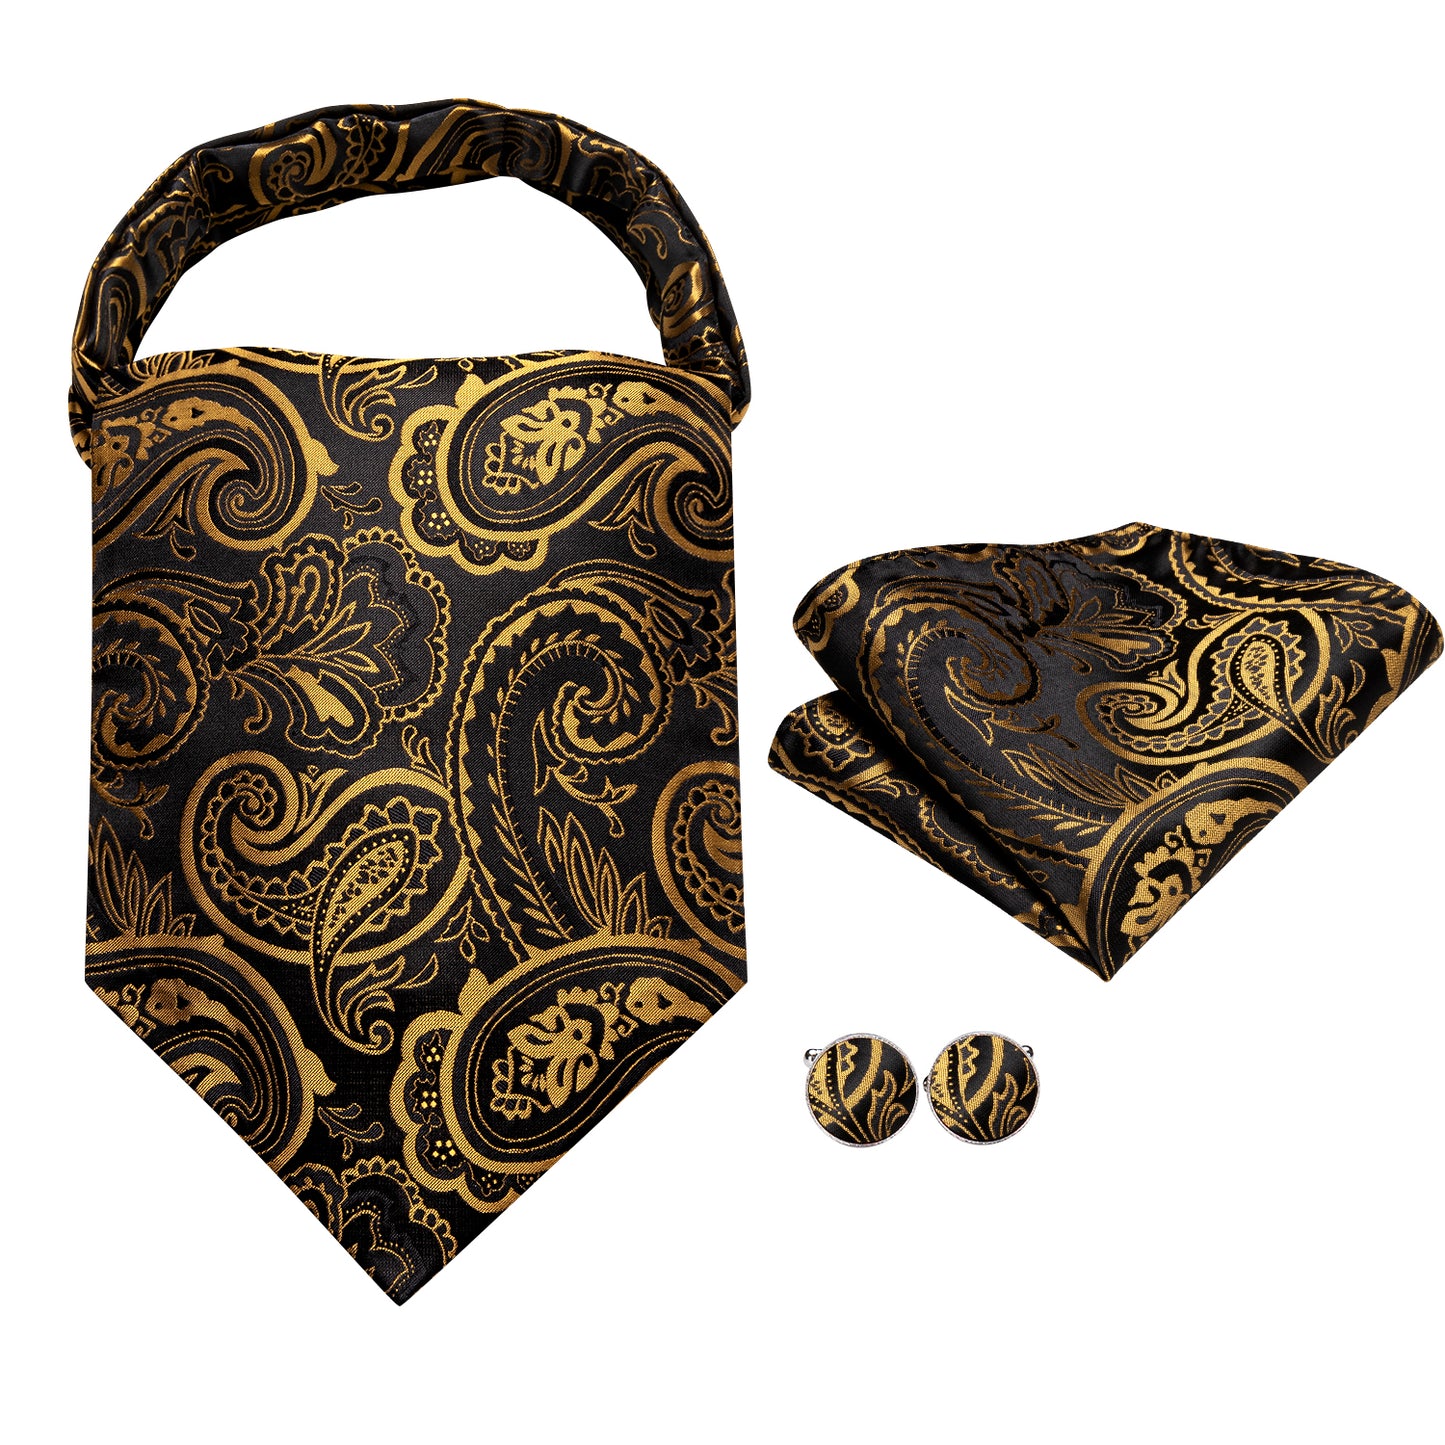 Victorian Ascot Silky Floral Day Cravat Set [Paisley-D-Black]